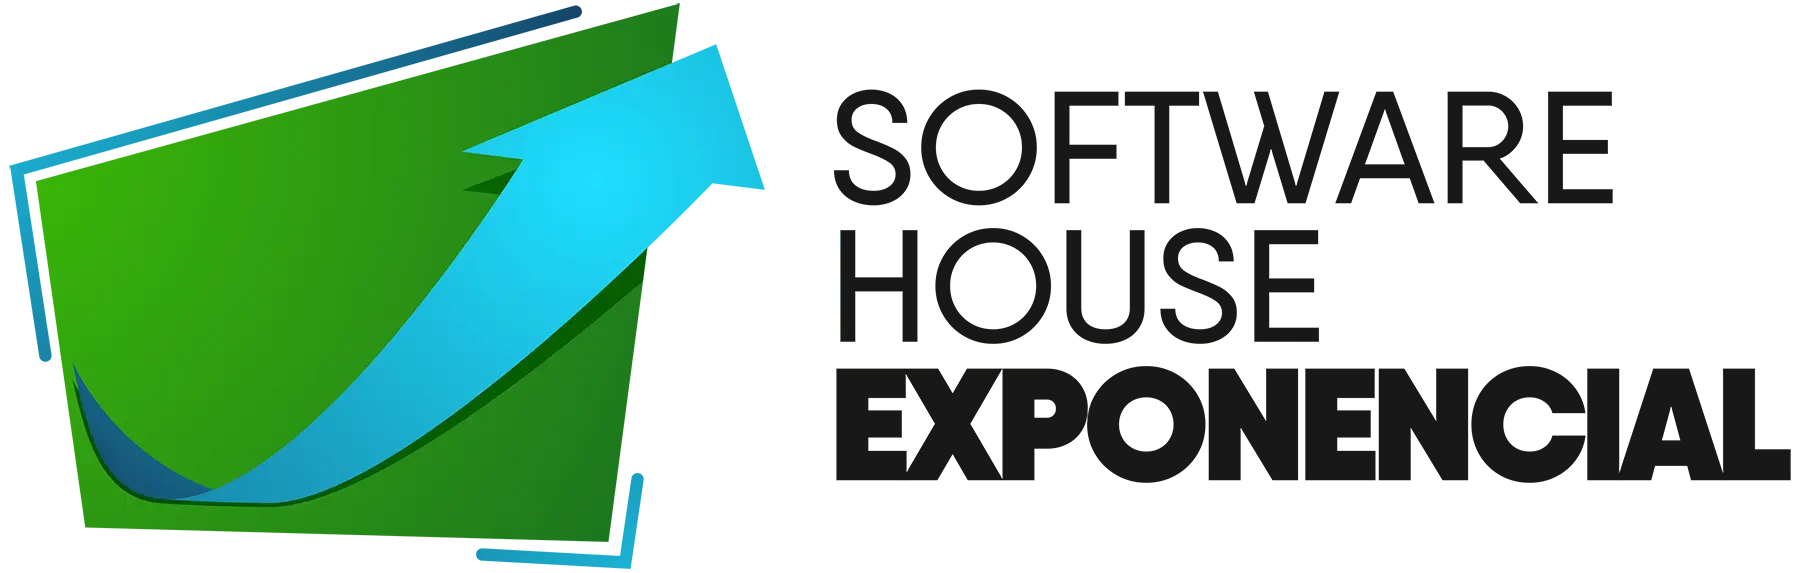 Software House Exponencial